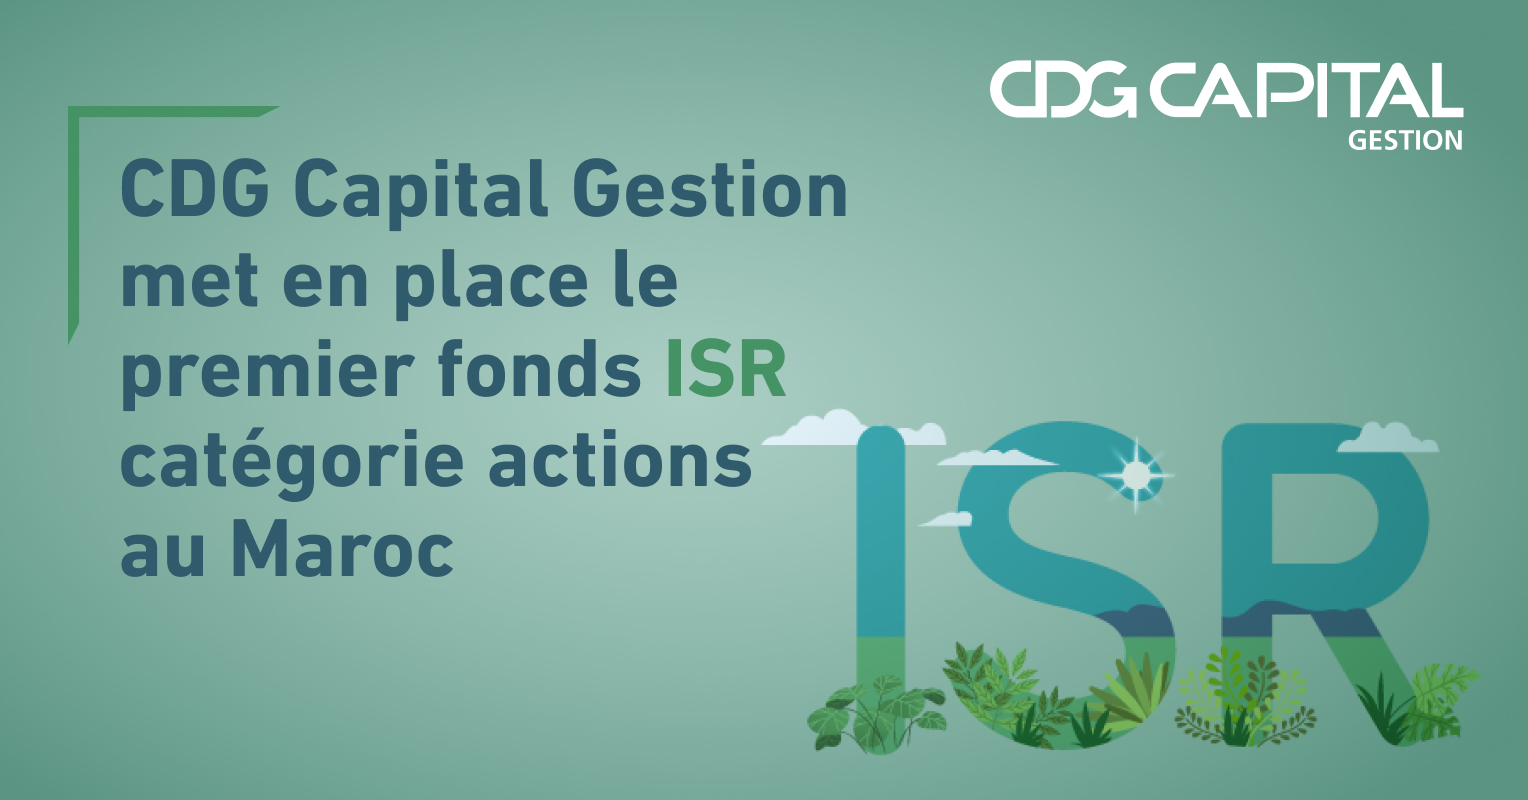 CDG Capital Gestion met en place le premier fonds ISR catégorie actions au Maroc